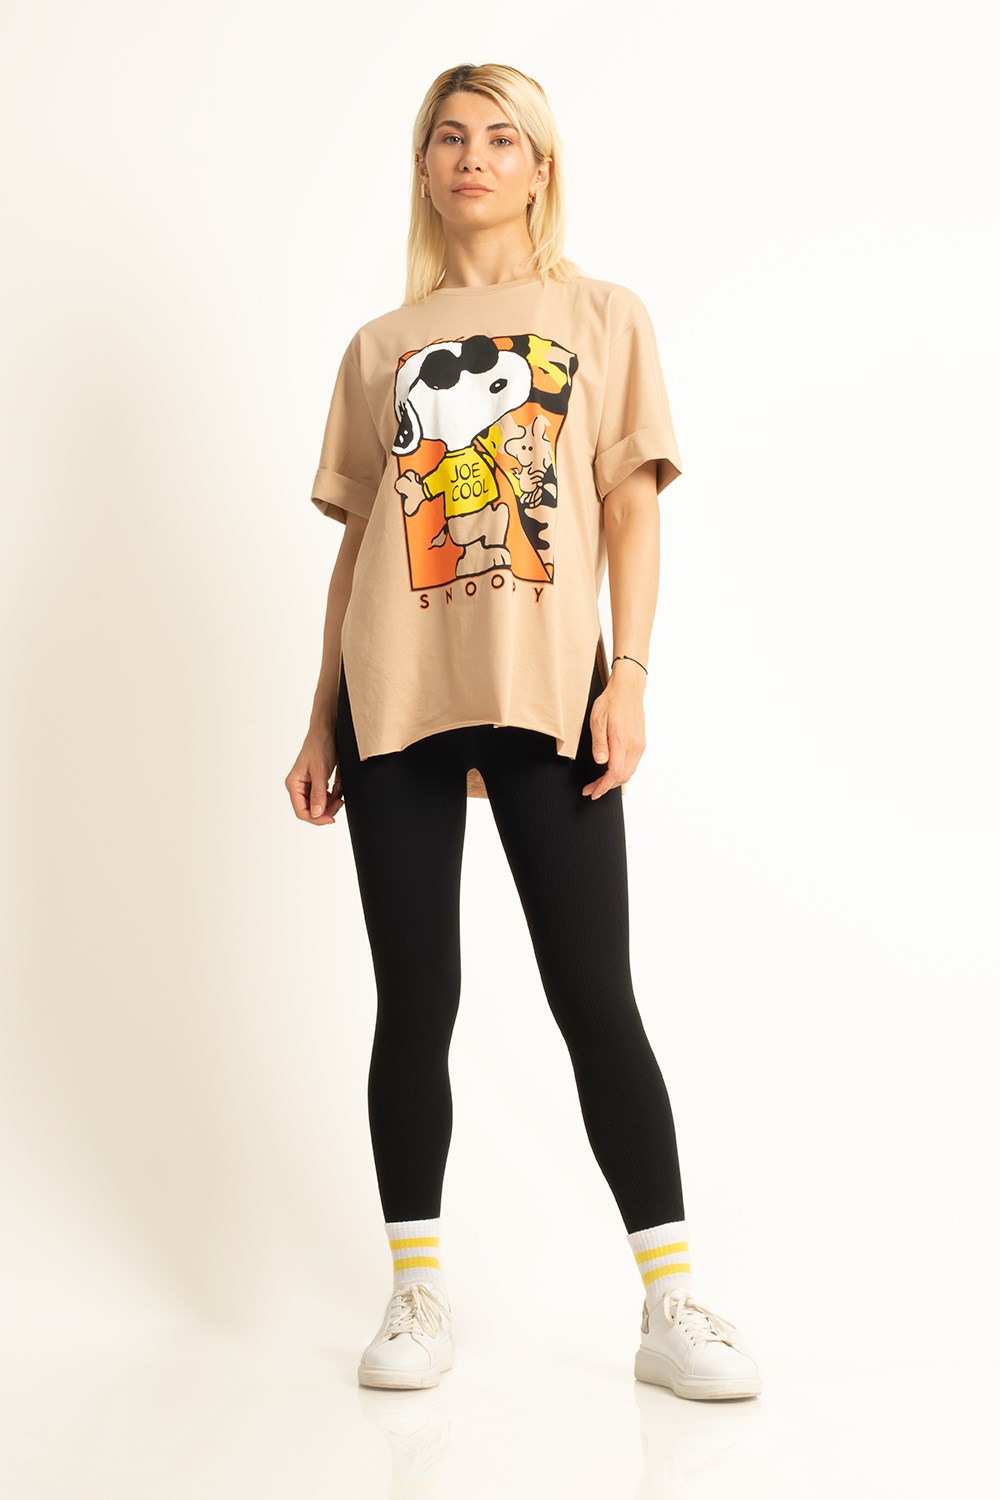 Kadın Camel Snoopy Baskılı T-shirt | Pranga Giyim